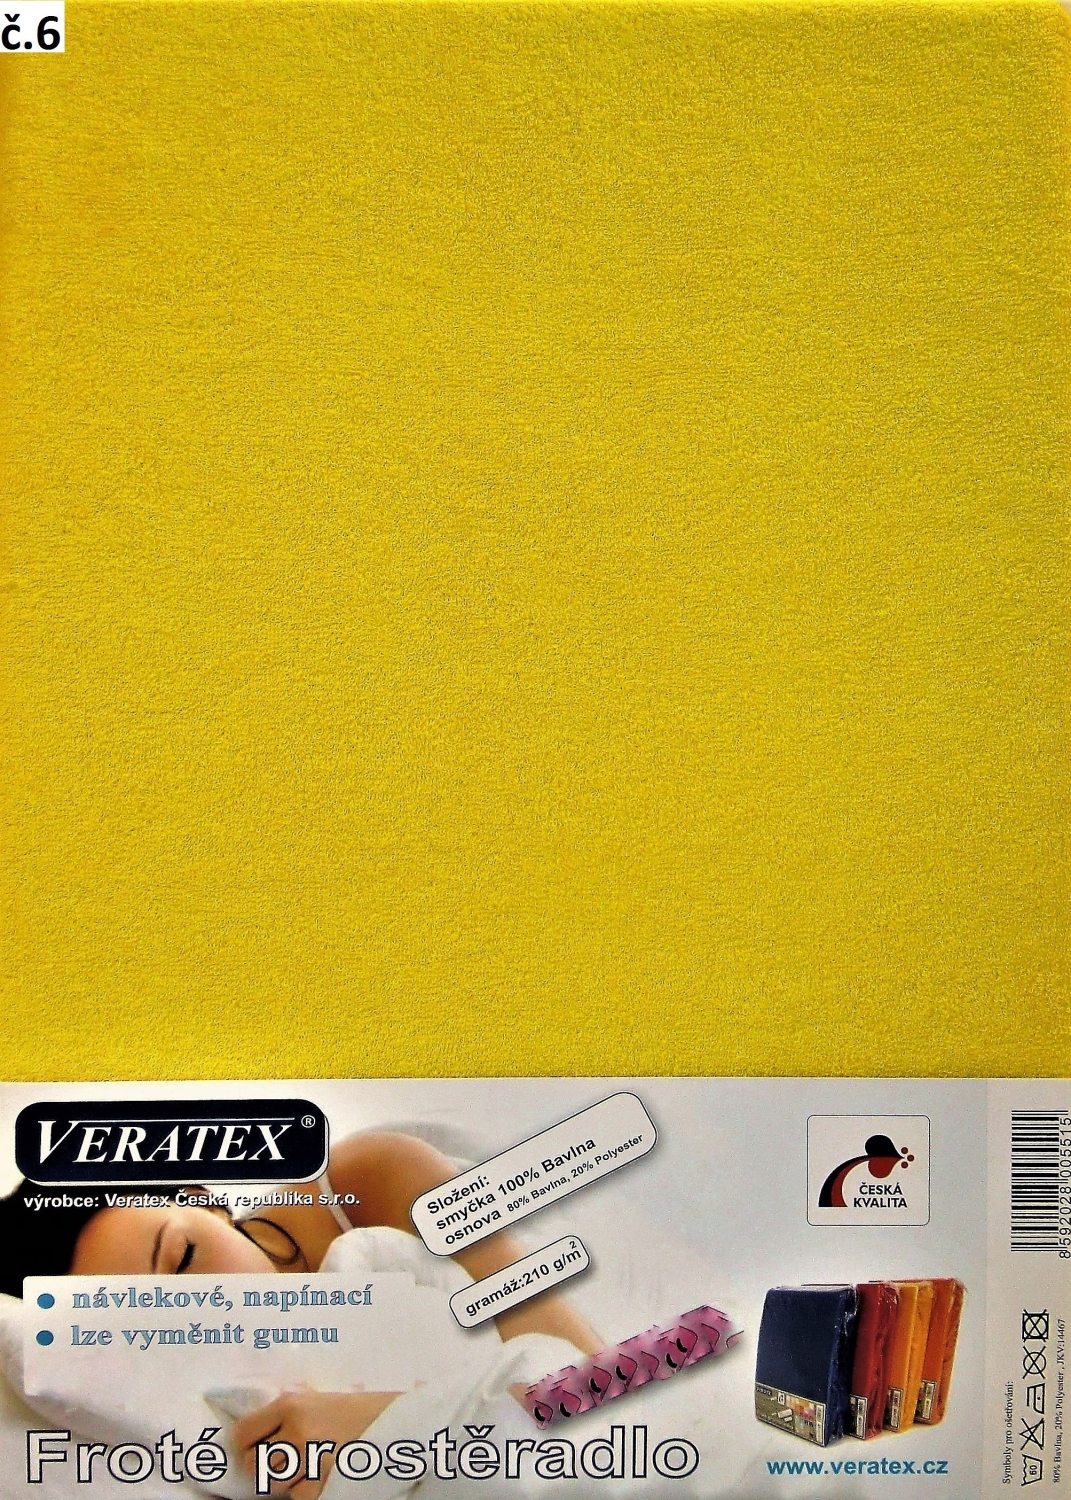 Veratex Froté prostěradlo jednolůžko 100x200/25cm (č. 6-stř.žluté)